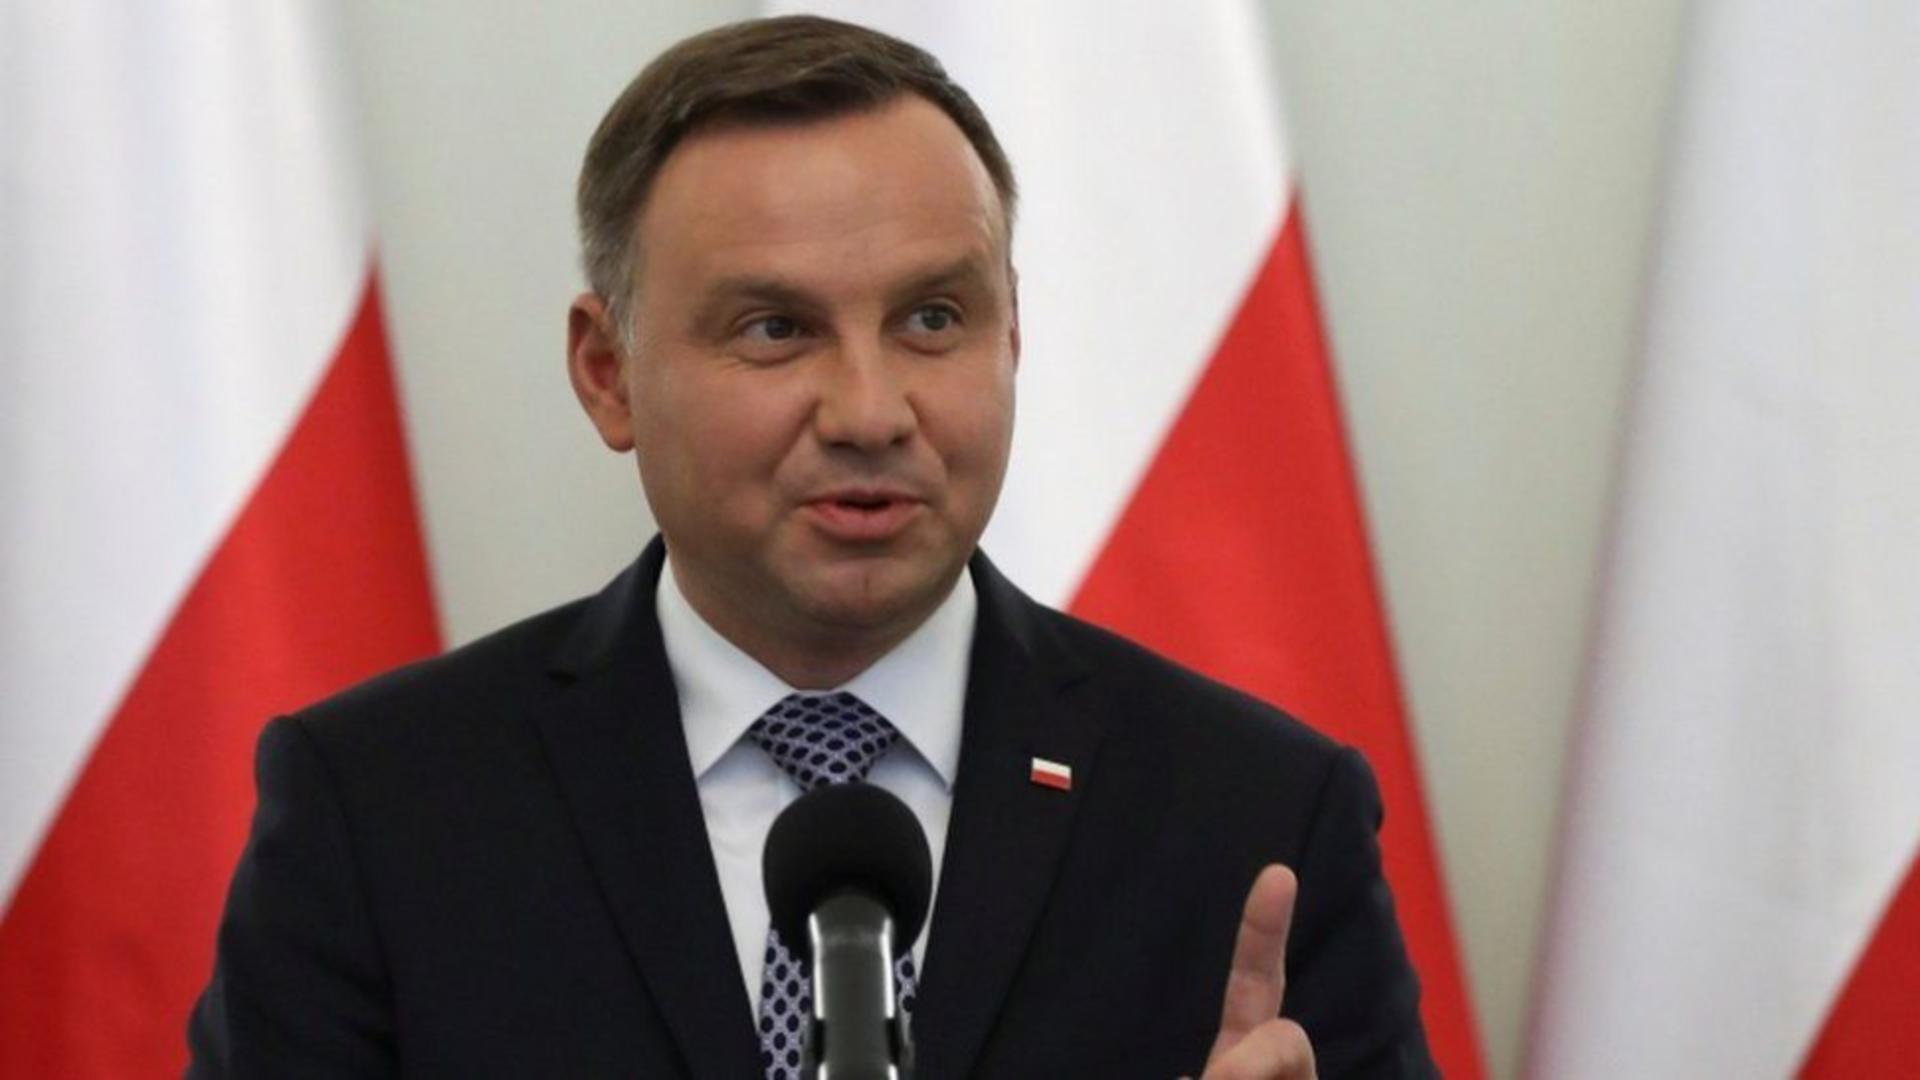 Alegeri parlamentare pe data de 15 octombrie – Anunțul făcut chiar de președintele Poloniei